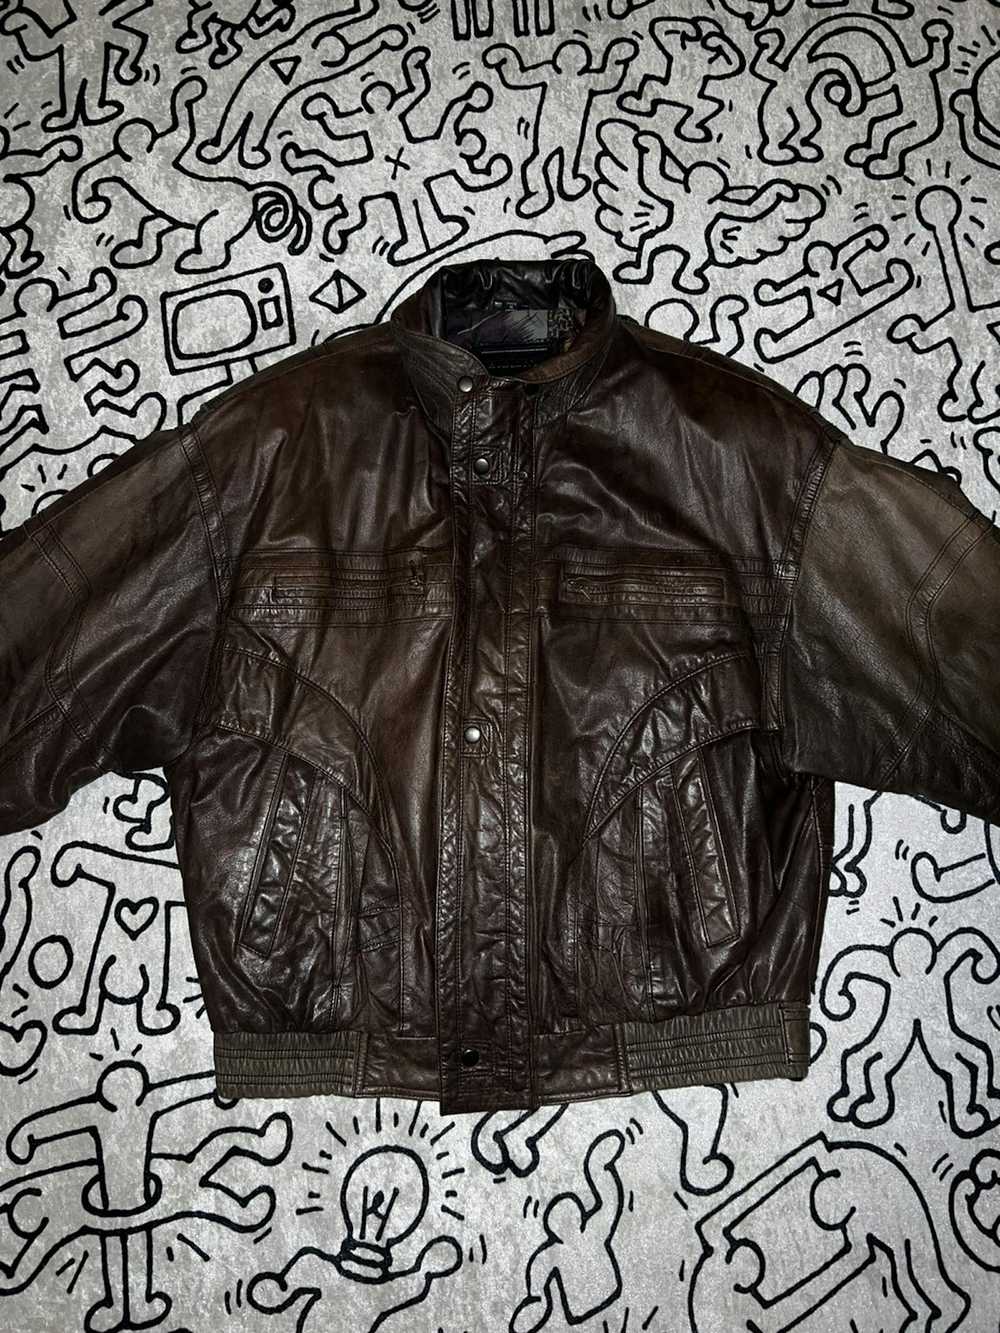 Japanese Brand × Leather Jacket × Vintage Vintage… - image 2